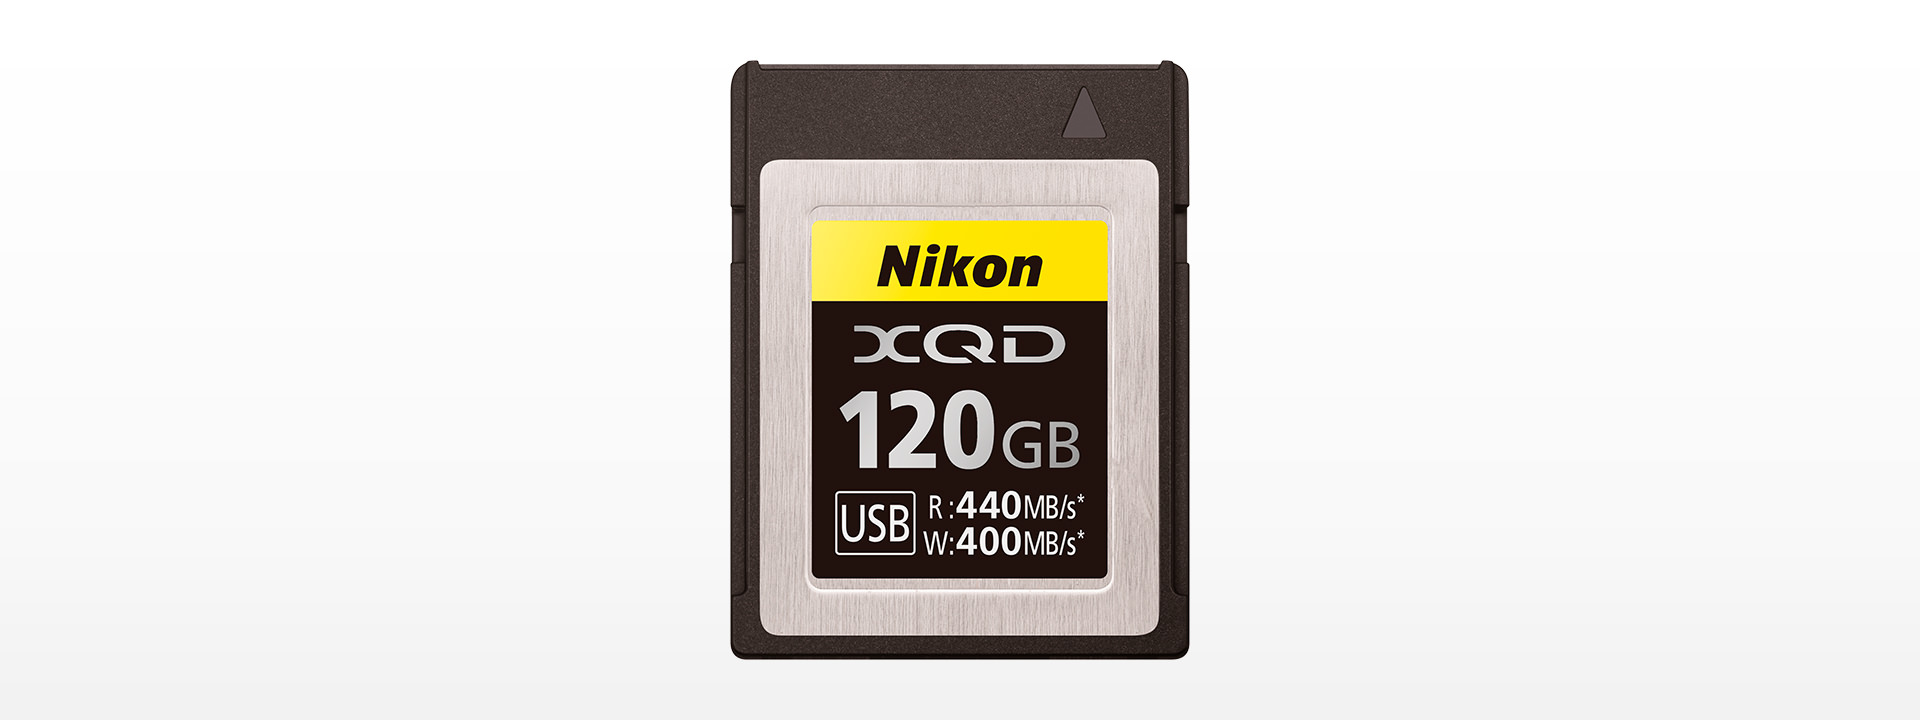 XQDメモリーカード120GB MC-XQ120G